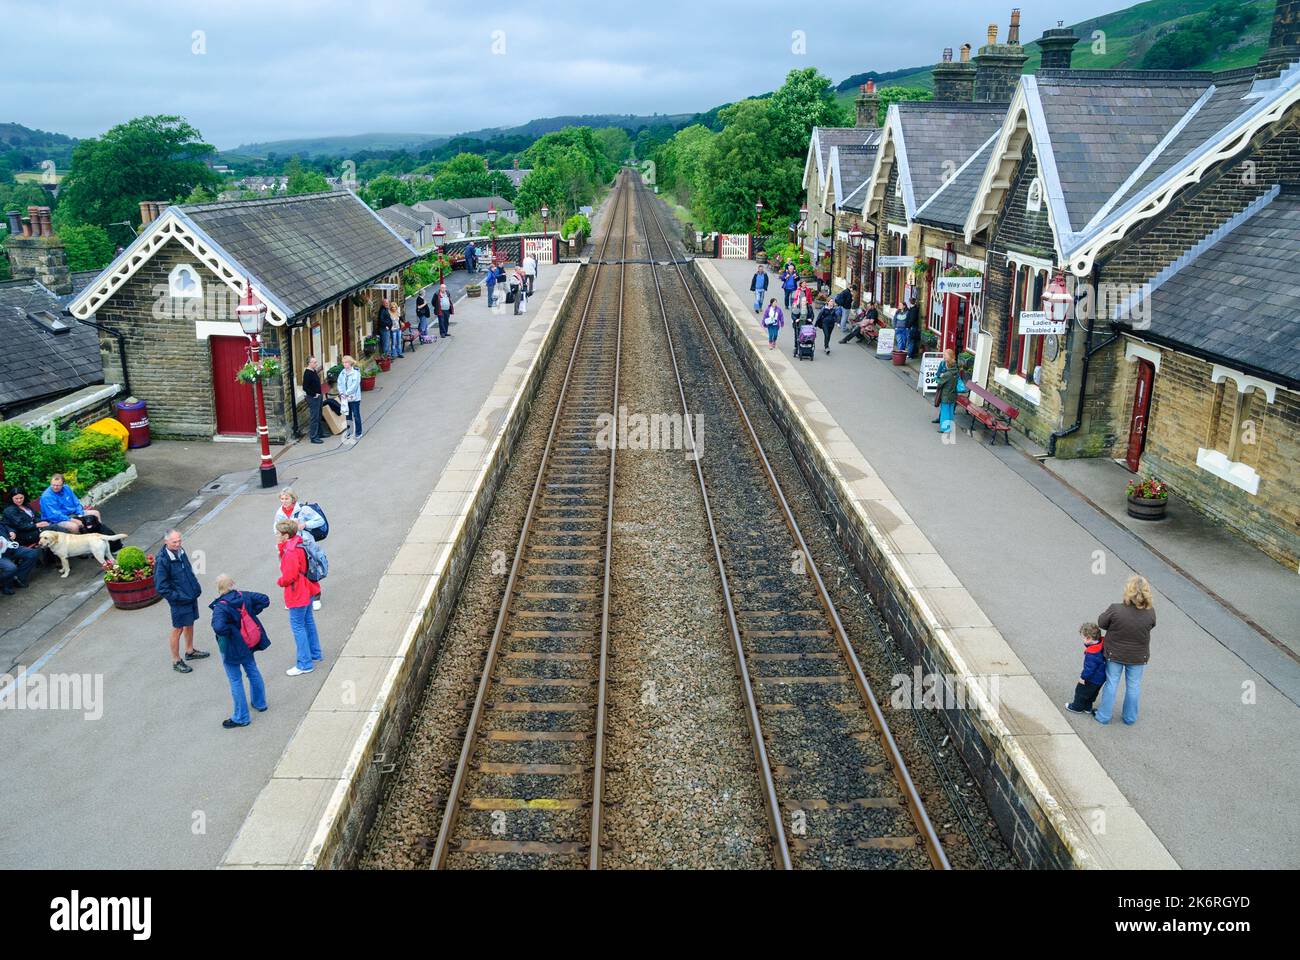 Appleby Railway Station on the Carlisle to Settle line, Cumbria, UK Stock Photo